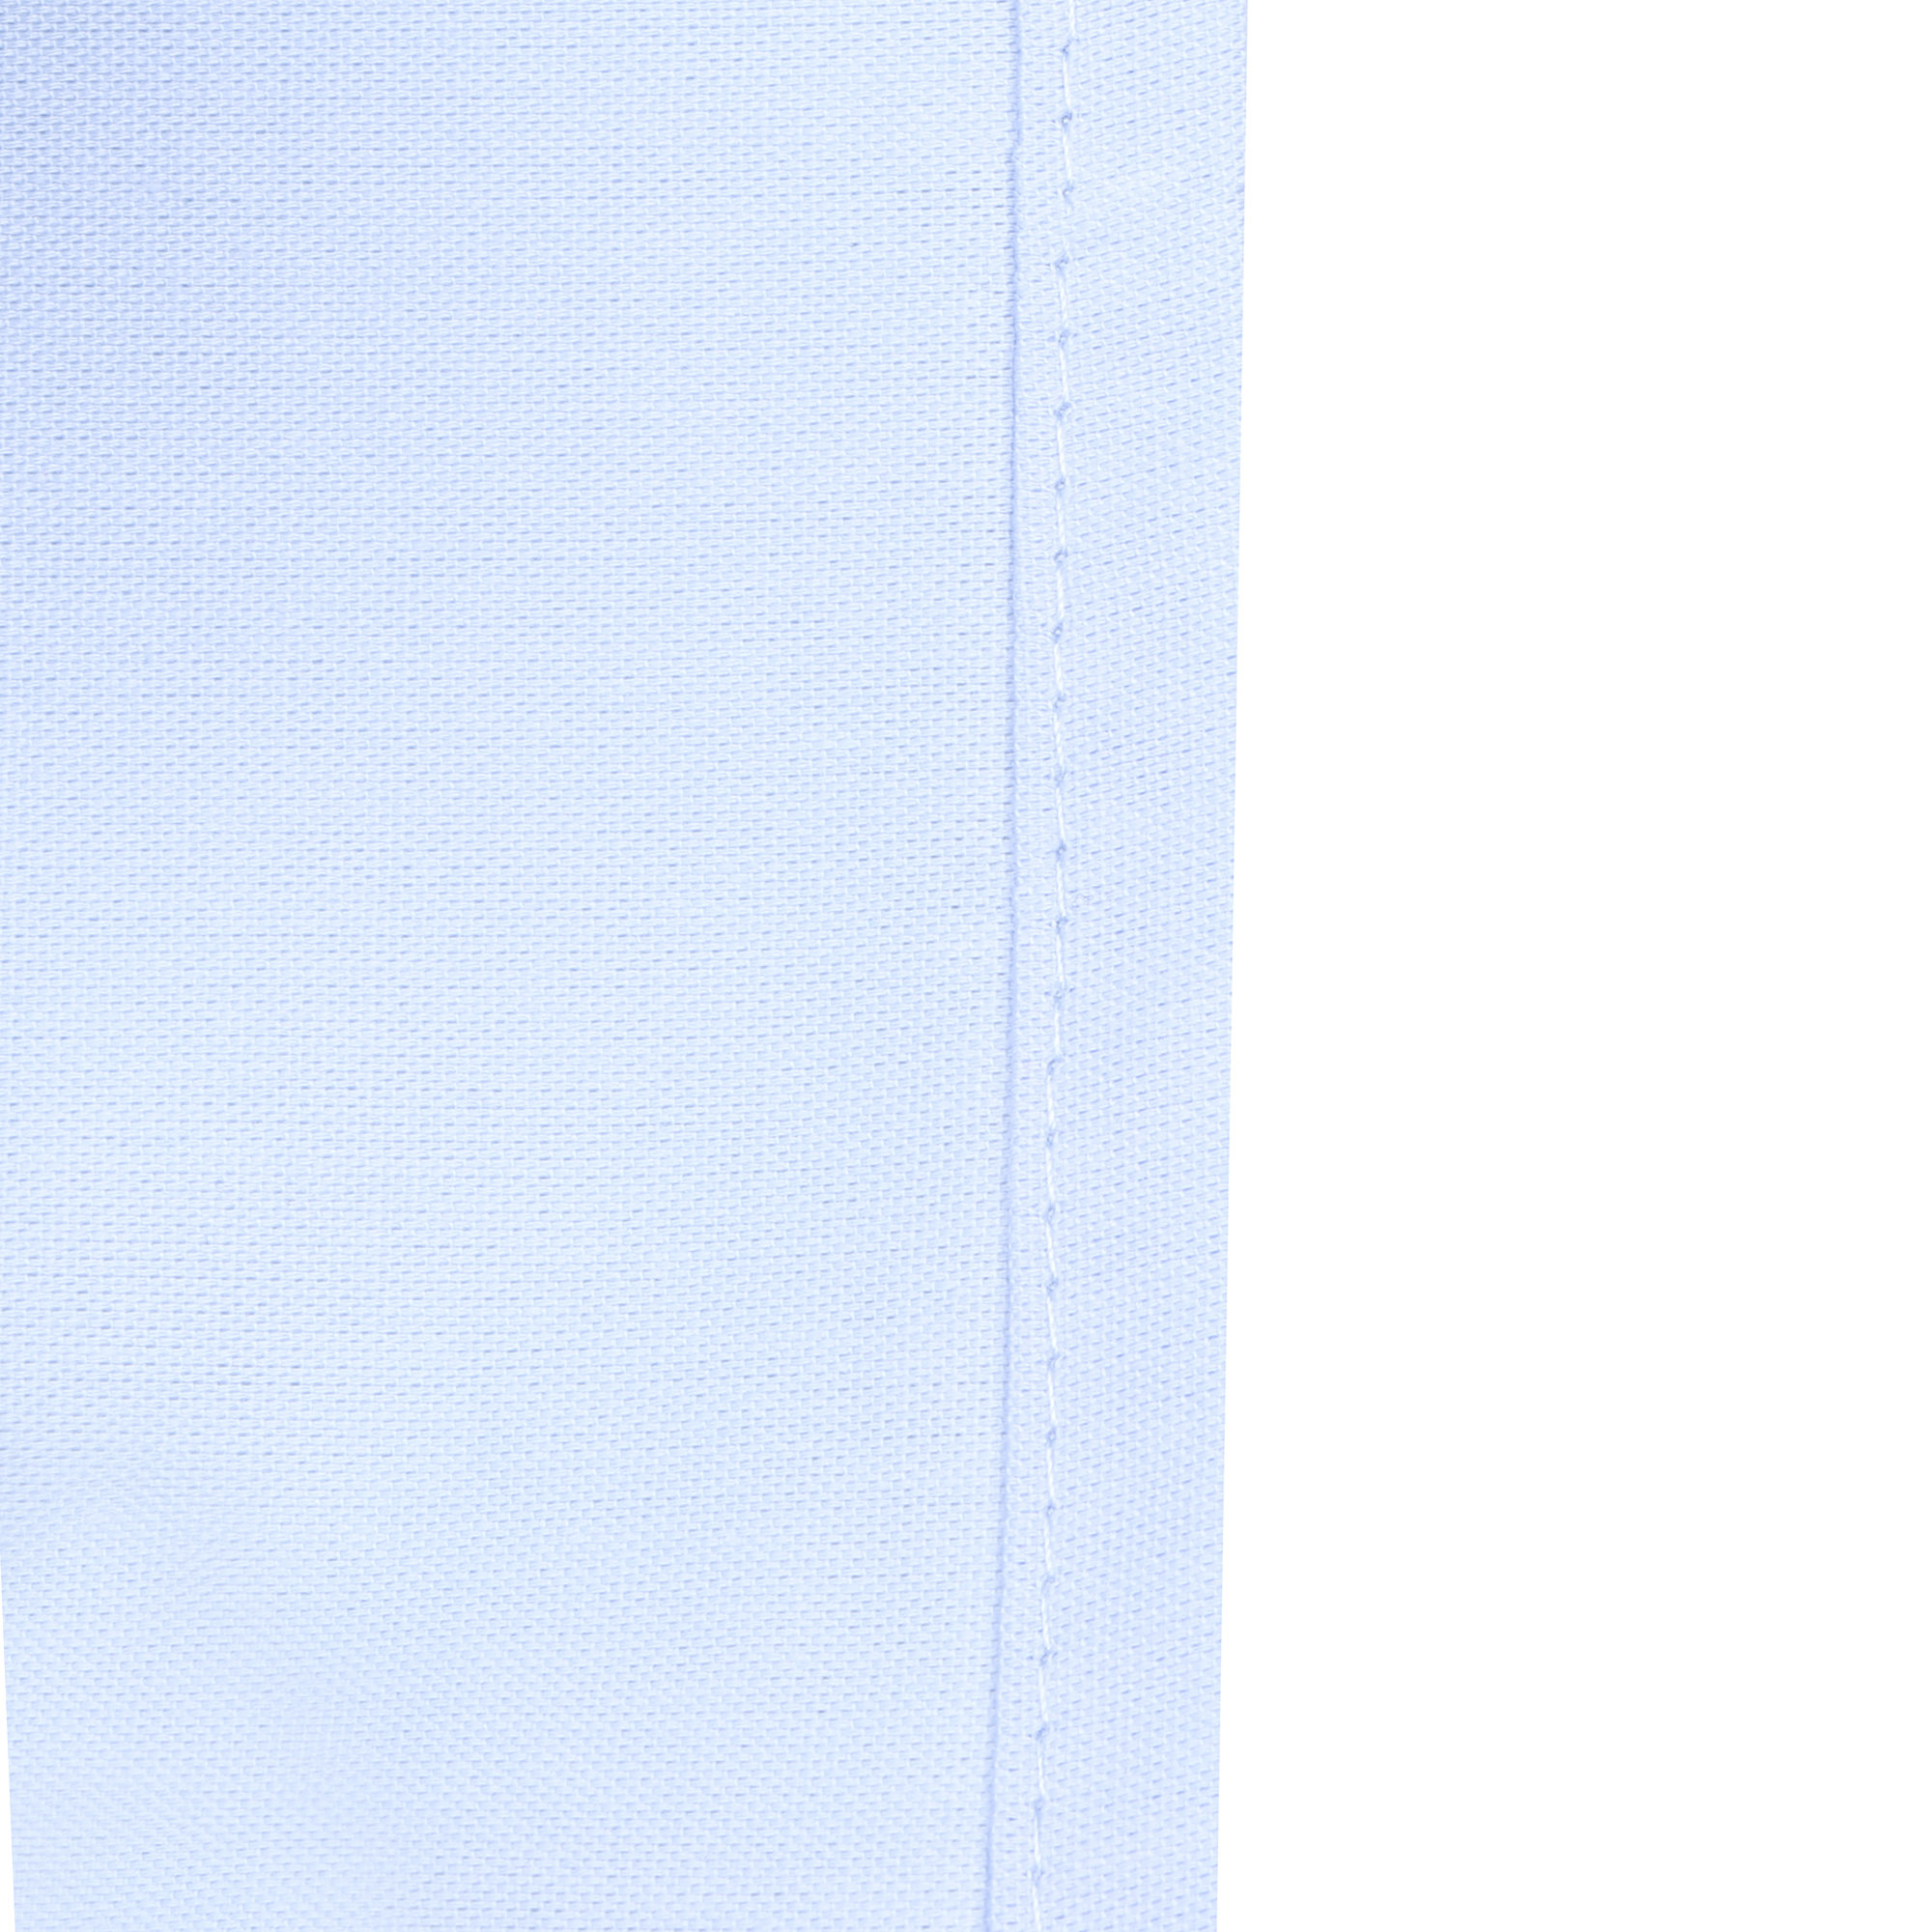 Сорочка для мальчиков КАРАМЕЛЛИ О14311 голубая 146, цвет голубой, размер 146 - фото 6